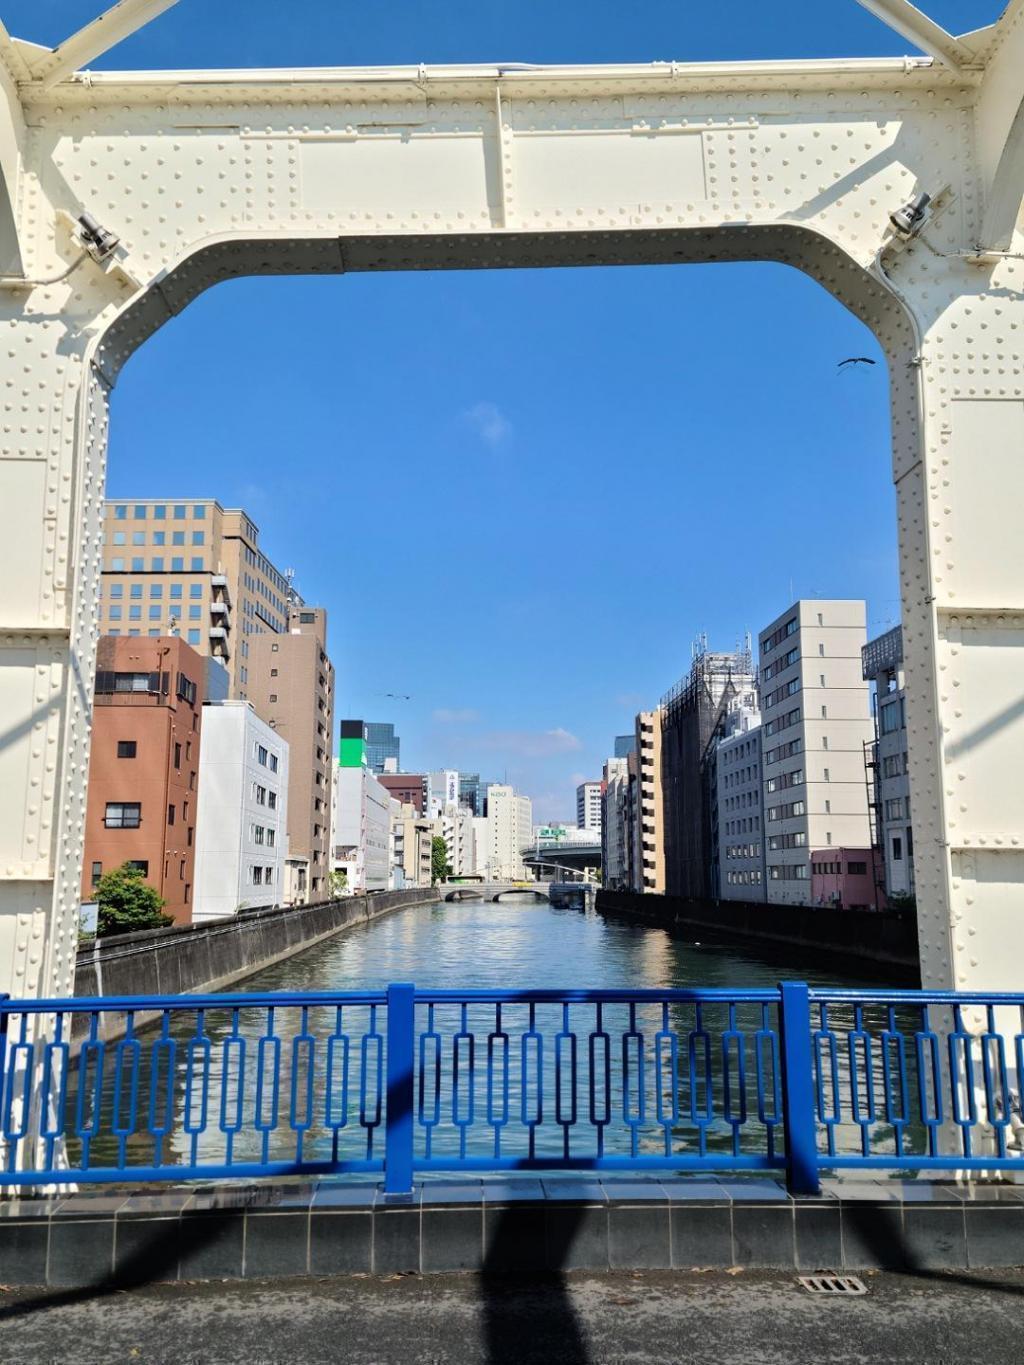  新川に架かる９つの橋
（シリーズ１回目：湊橋・豊海橋）